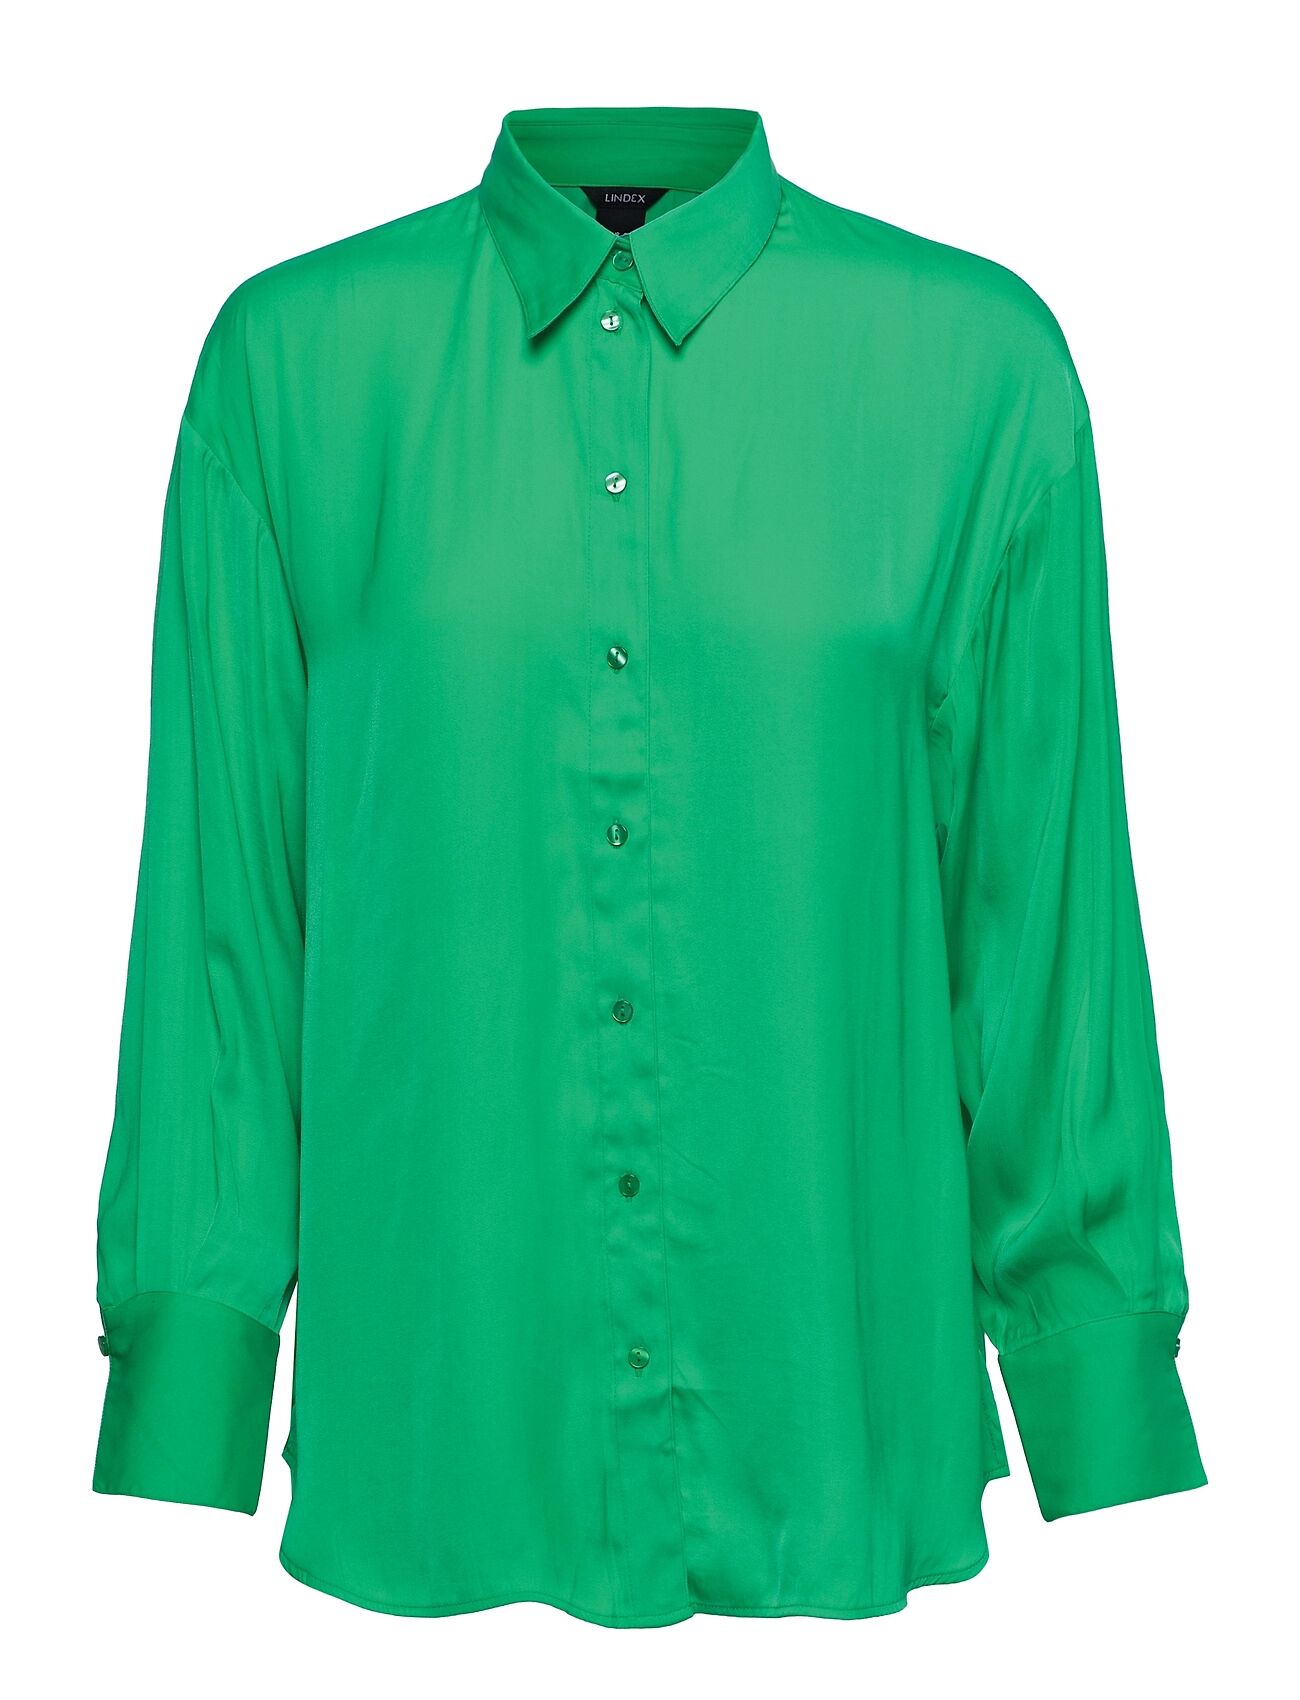 Lindex Shirt Sandra Dayjama Langermet Skjorte Grønn Lindex